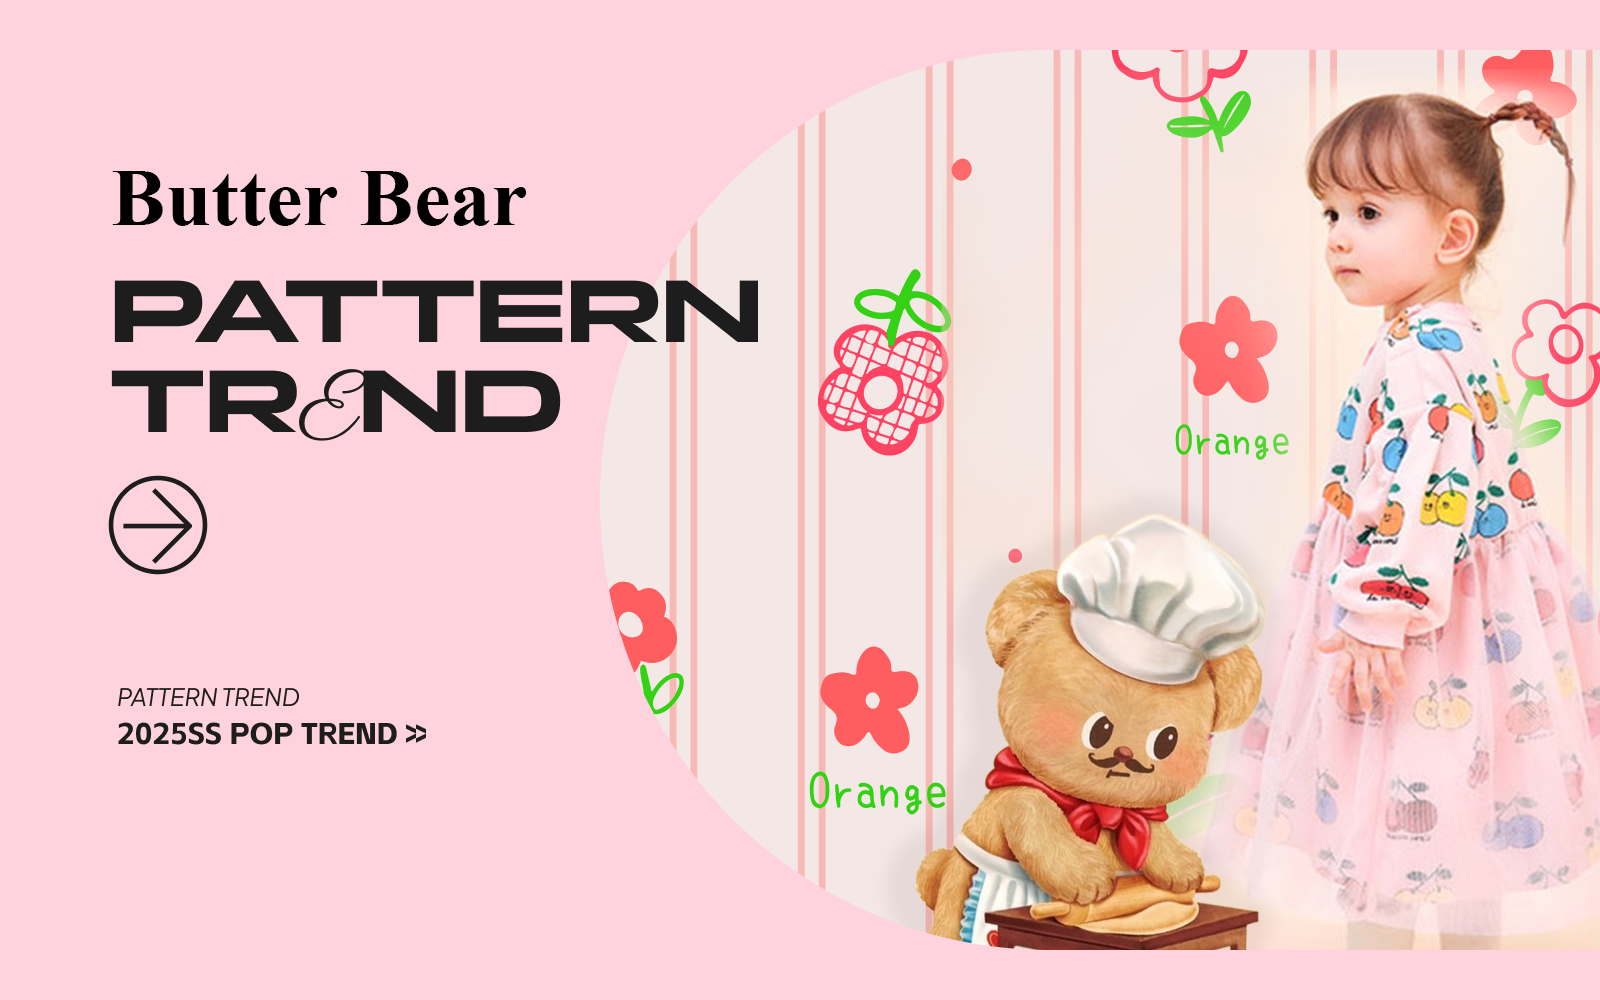 Butter Bear - The Pattern Trend for Infantswear